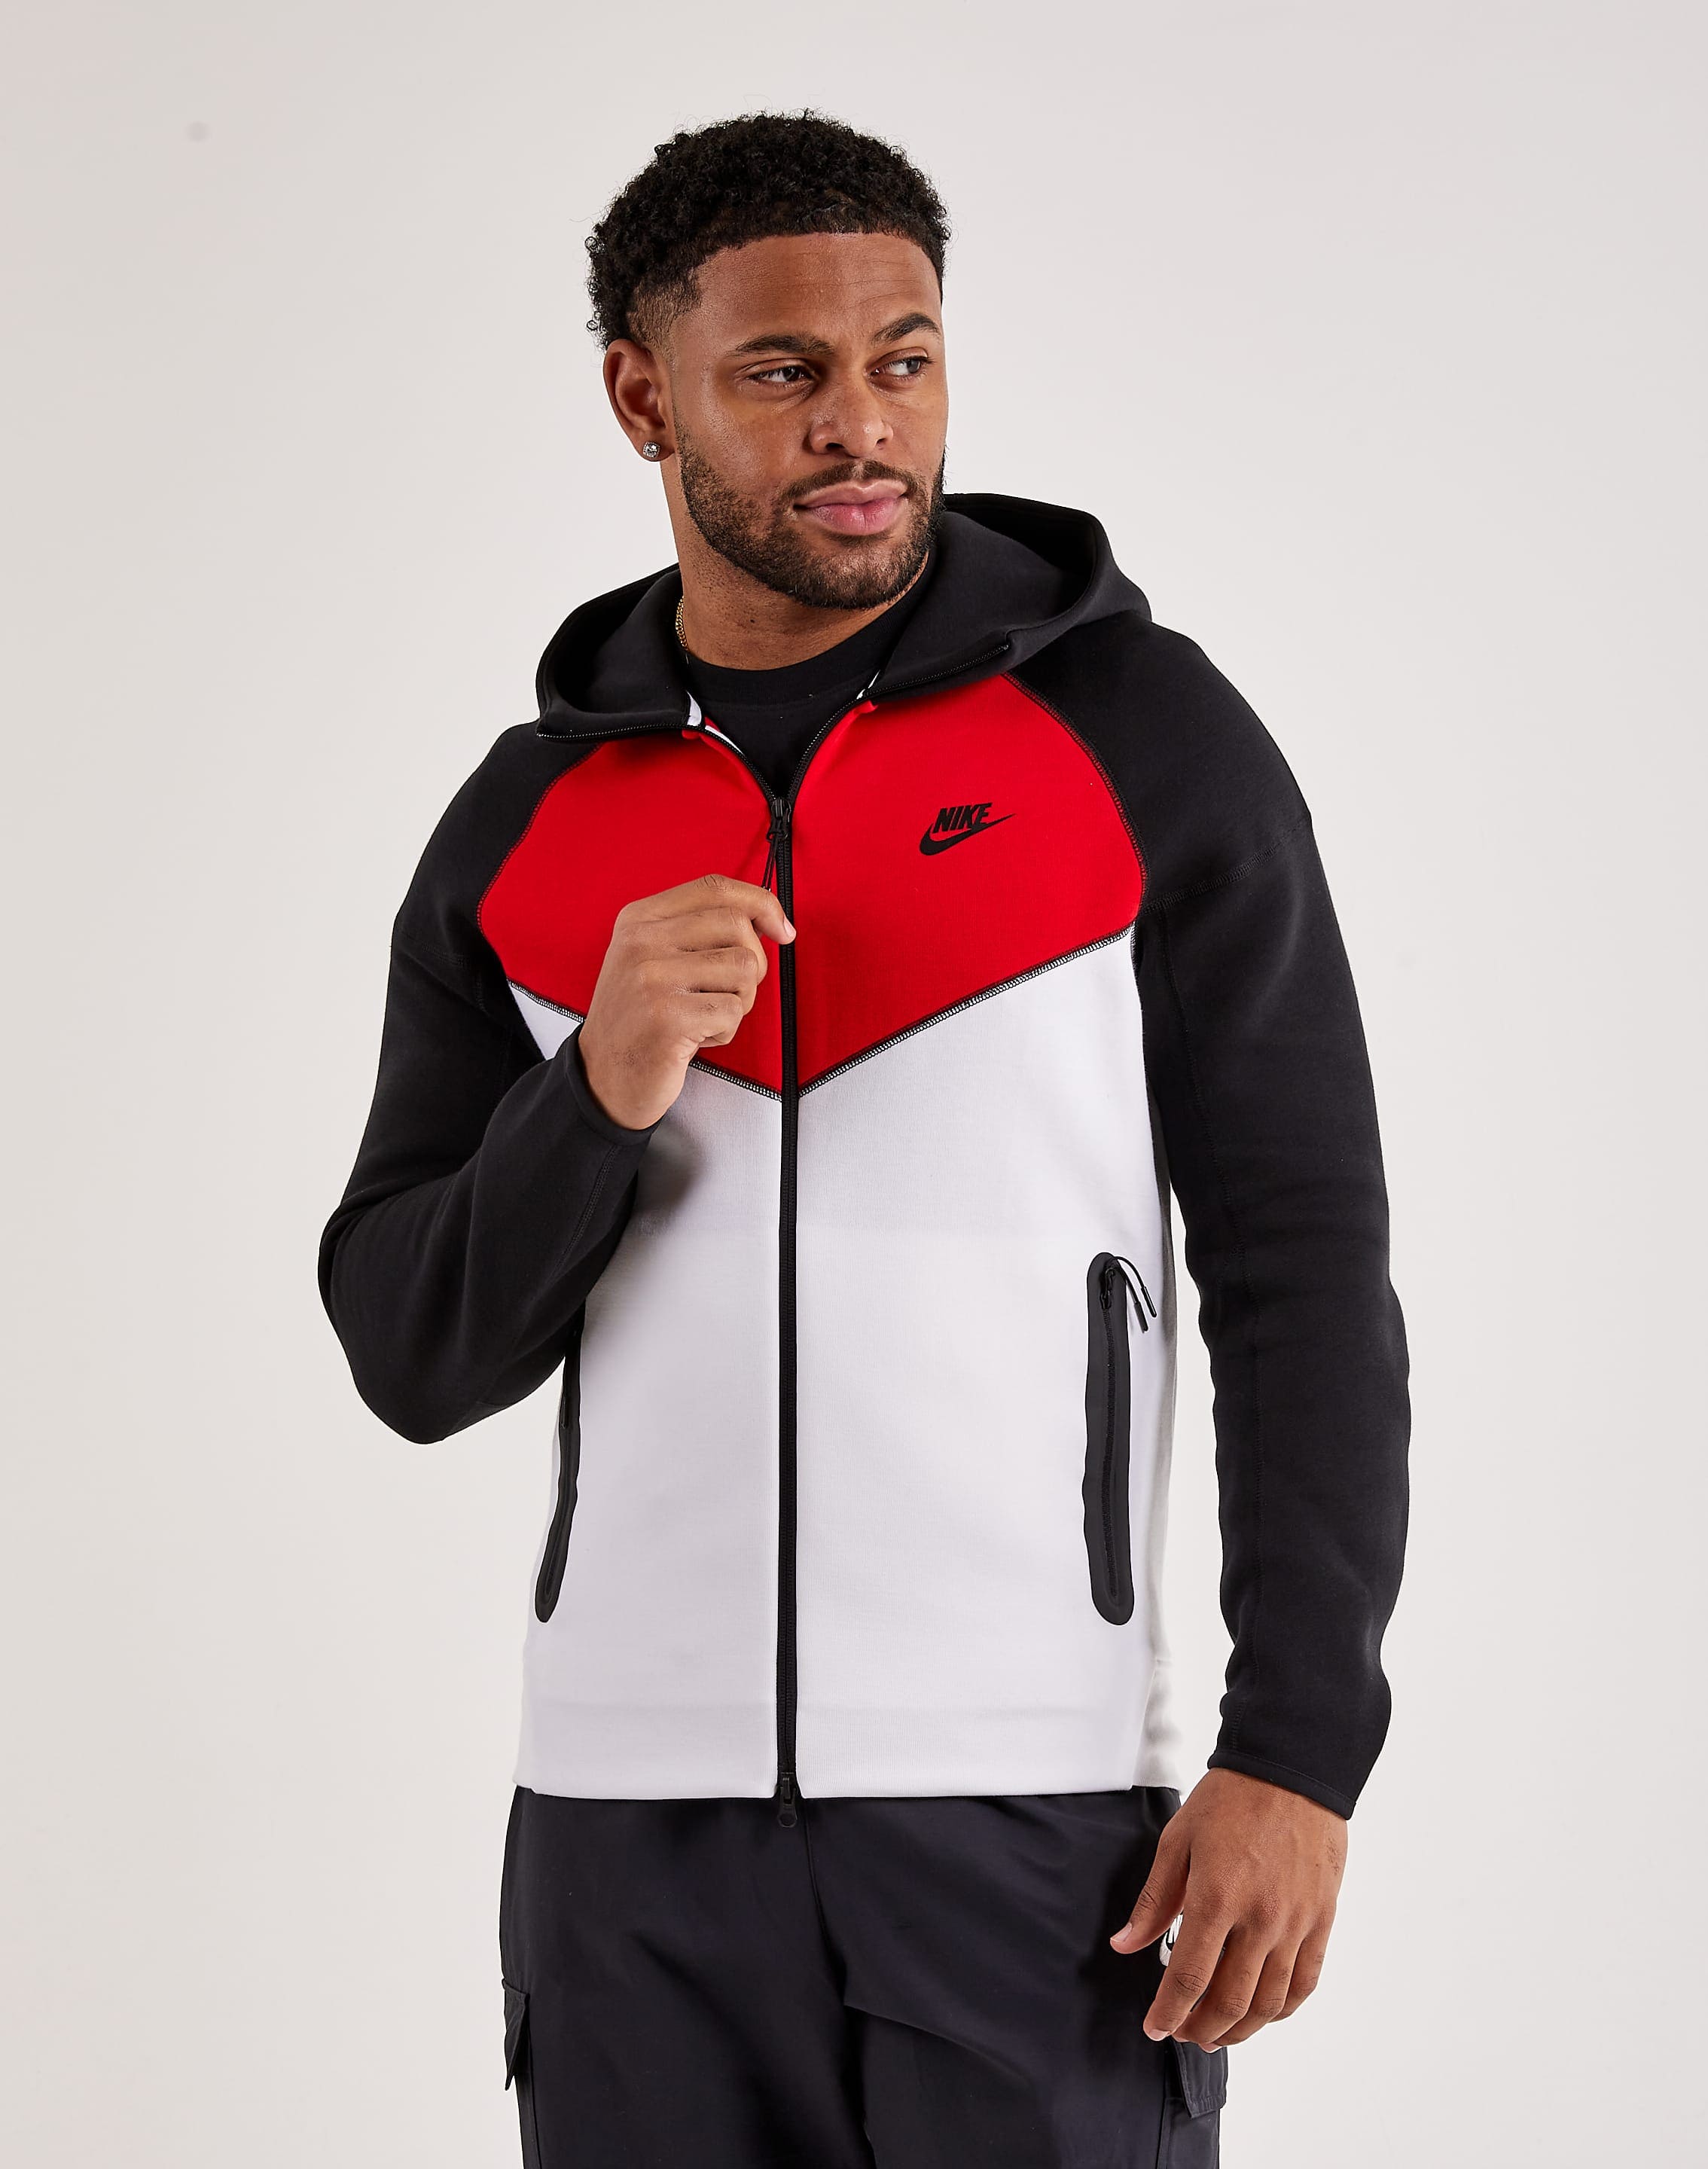 Nike Sportswear Tech Fleece Full-Zip Hoodie Team Red/Black